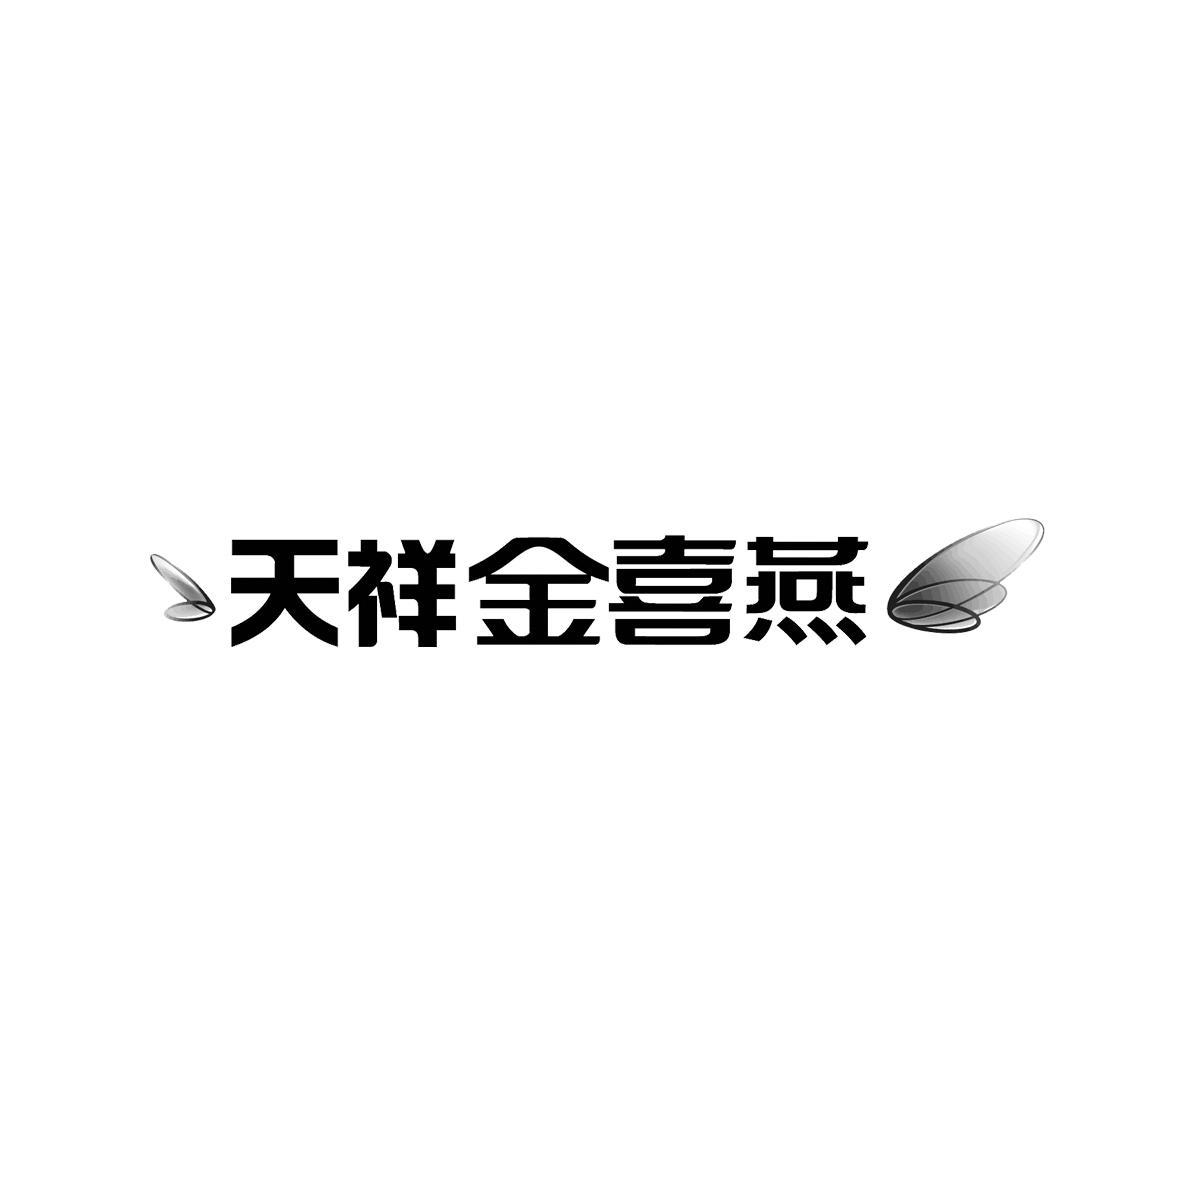 青岛天祥食品集团有限公司